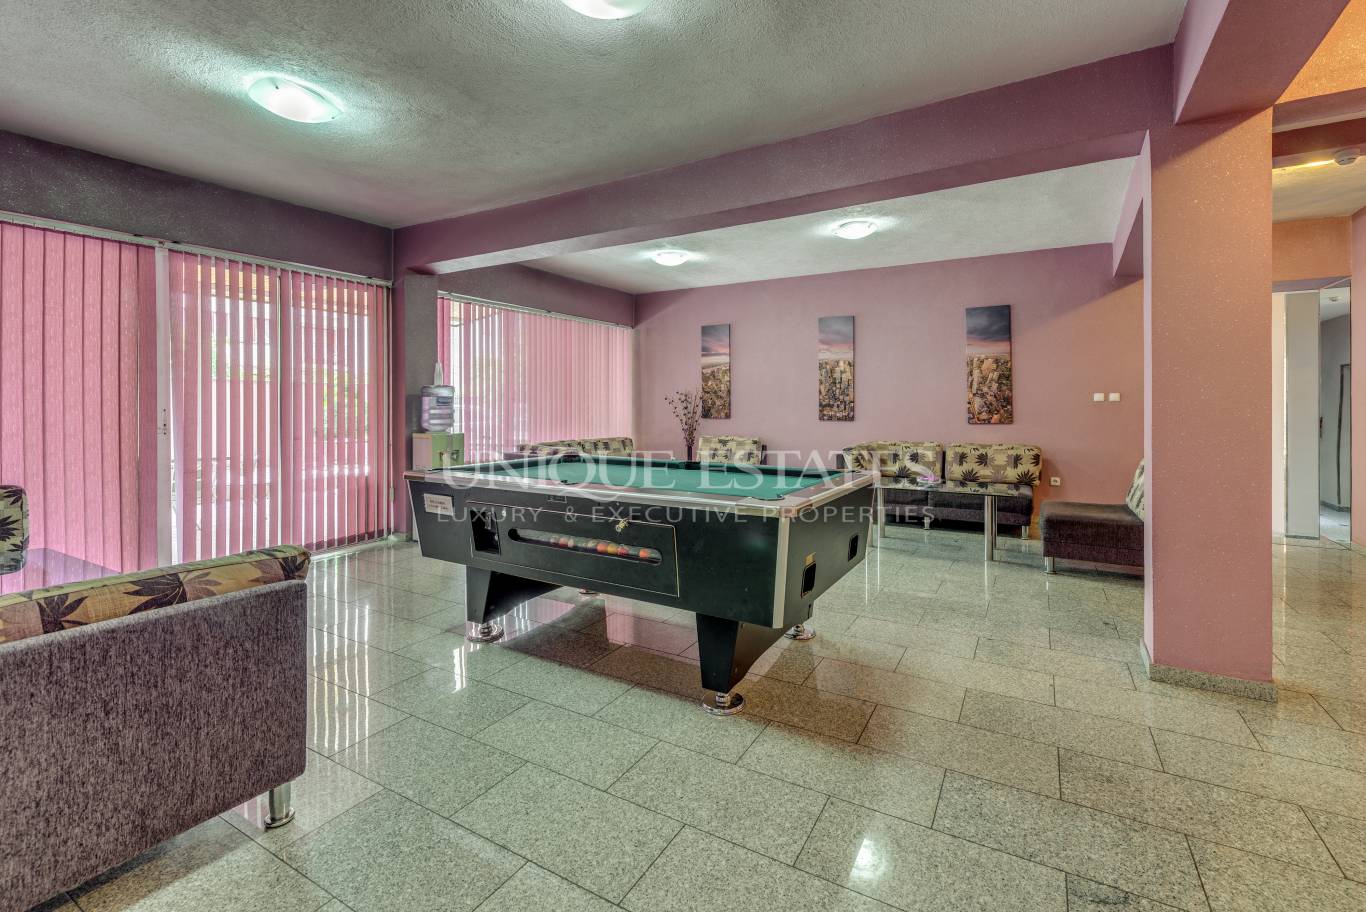 Хотел / Apartment house за продажба в София, Витоша - код на имота: K15300 - image 3